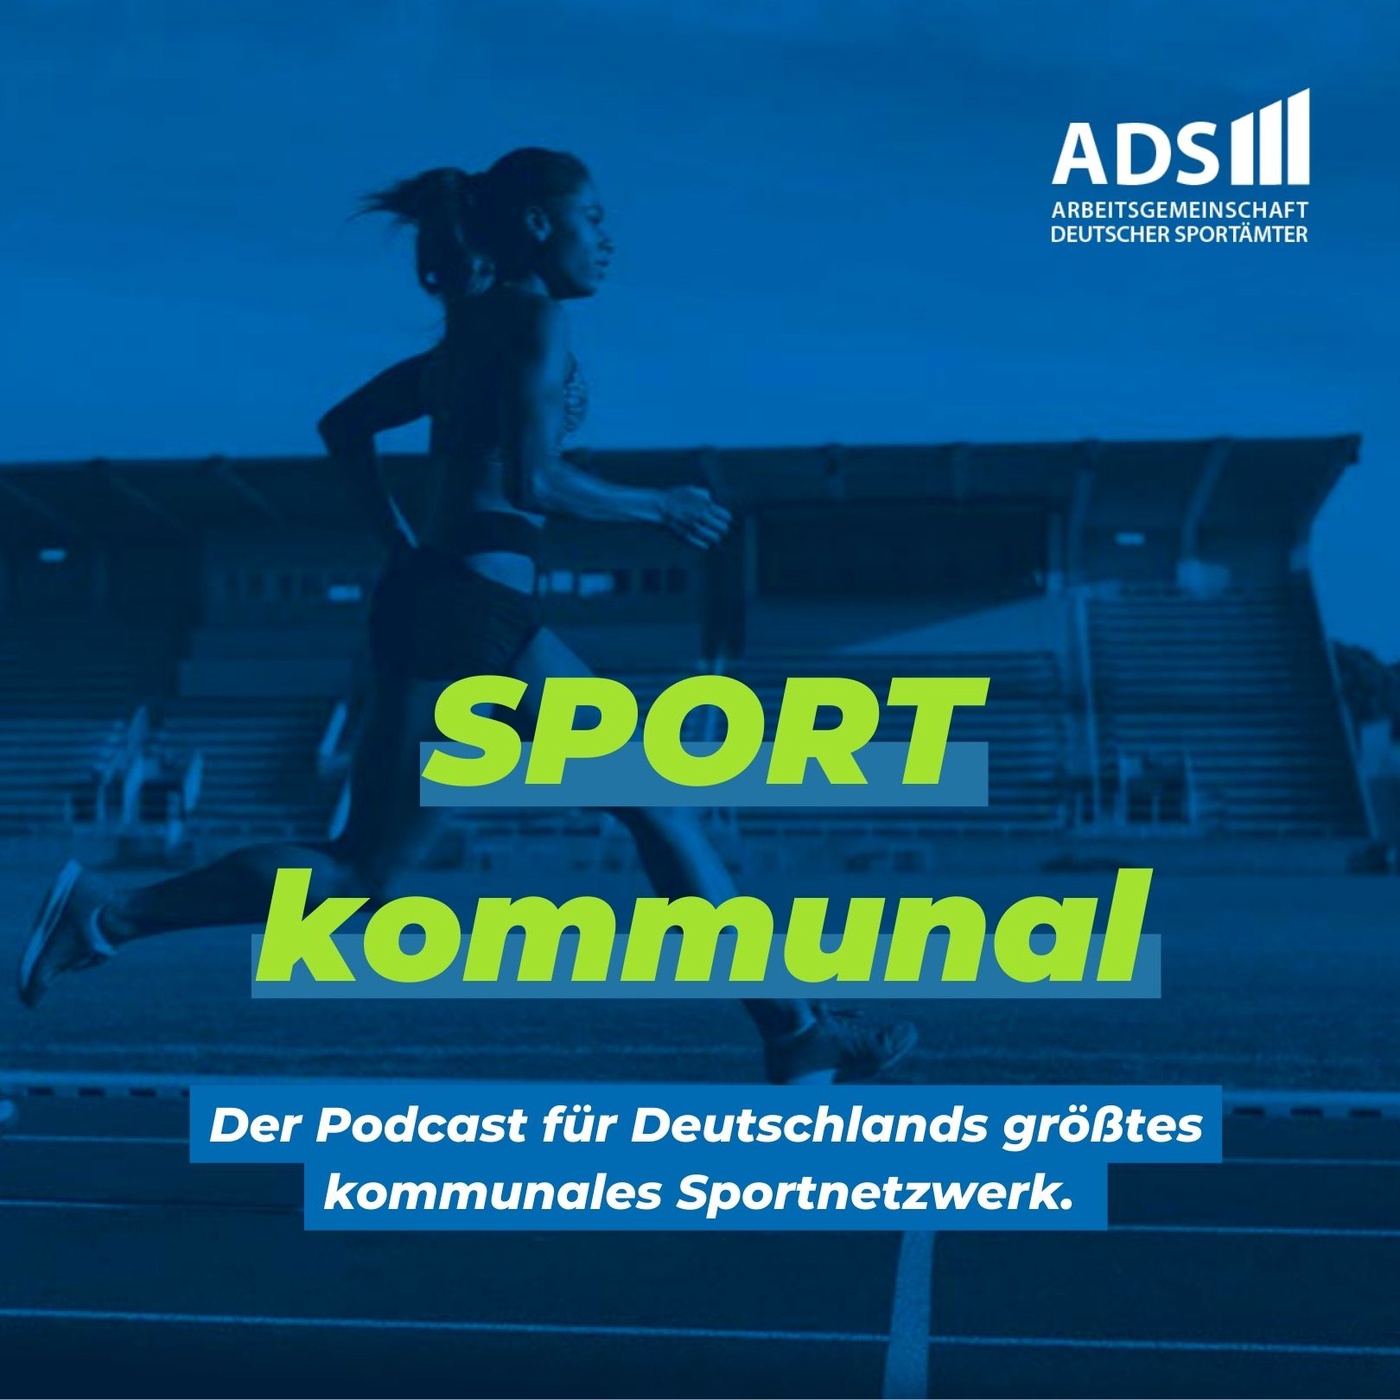 SPORT kommunal - Der Podcast für Deutschlands größtes kommunales Sportnetzwerk